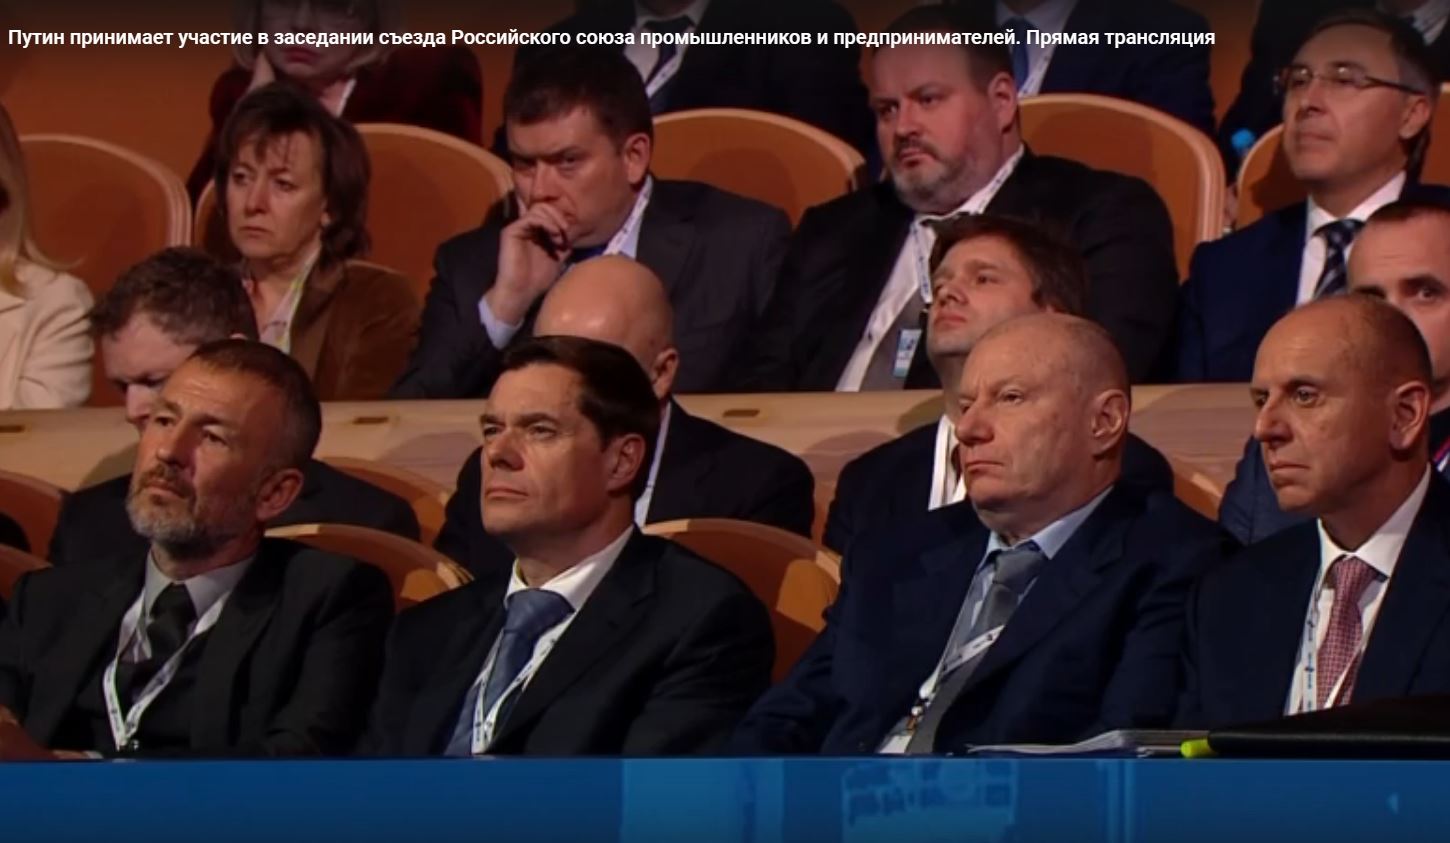 Миллиардеры Мордашов, Потанин и другие участники съезда РСПП внимательно слушают вступительное слово Путина